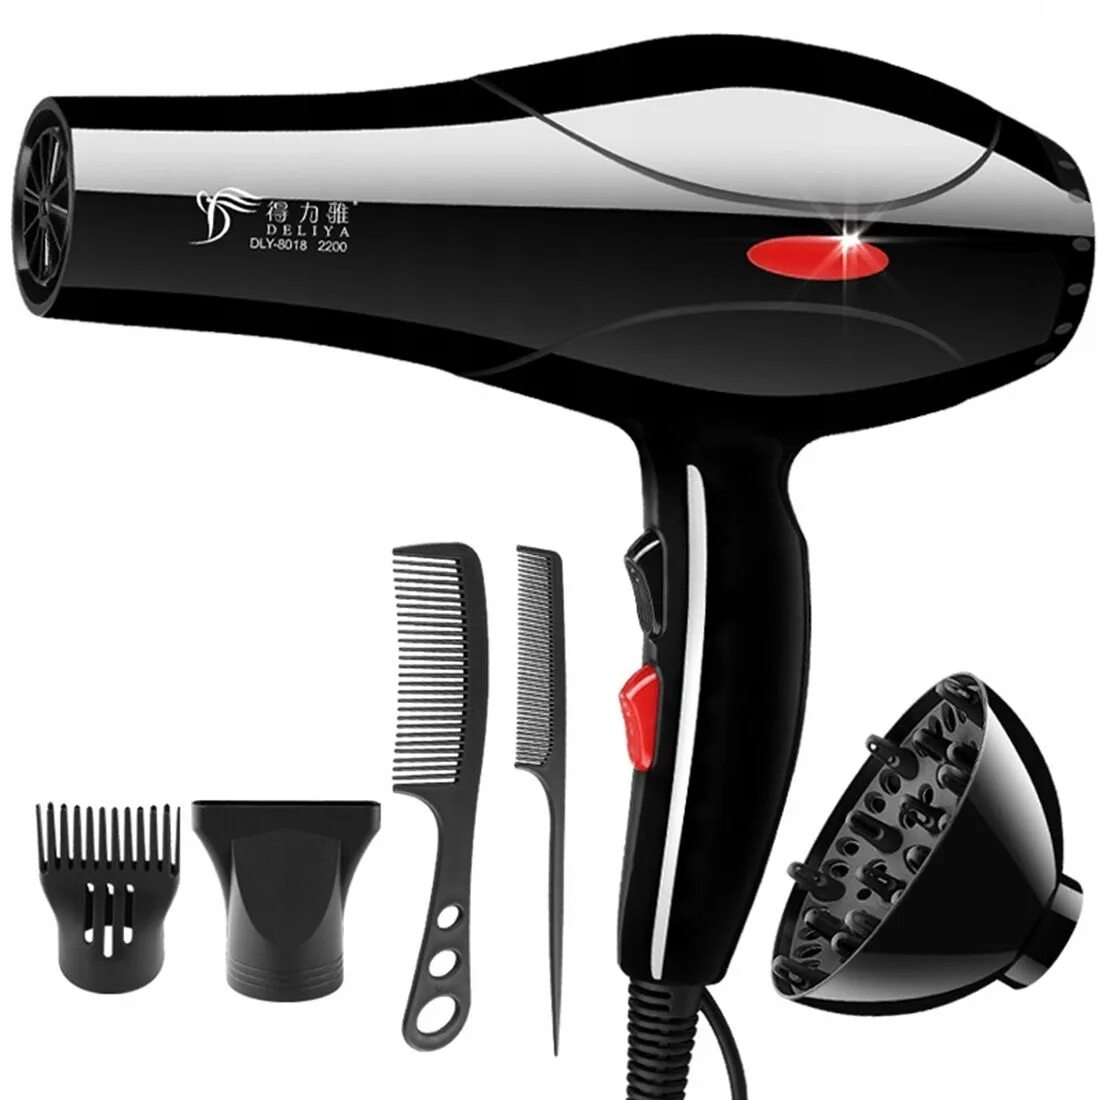 Pro Hairdryer фен для волос. Super hair Dryer фен 2000 Вт. Фен FK-9900. Фены для парикмахеров купить